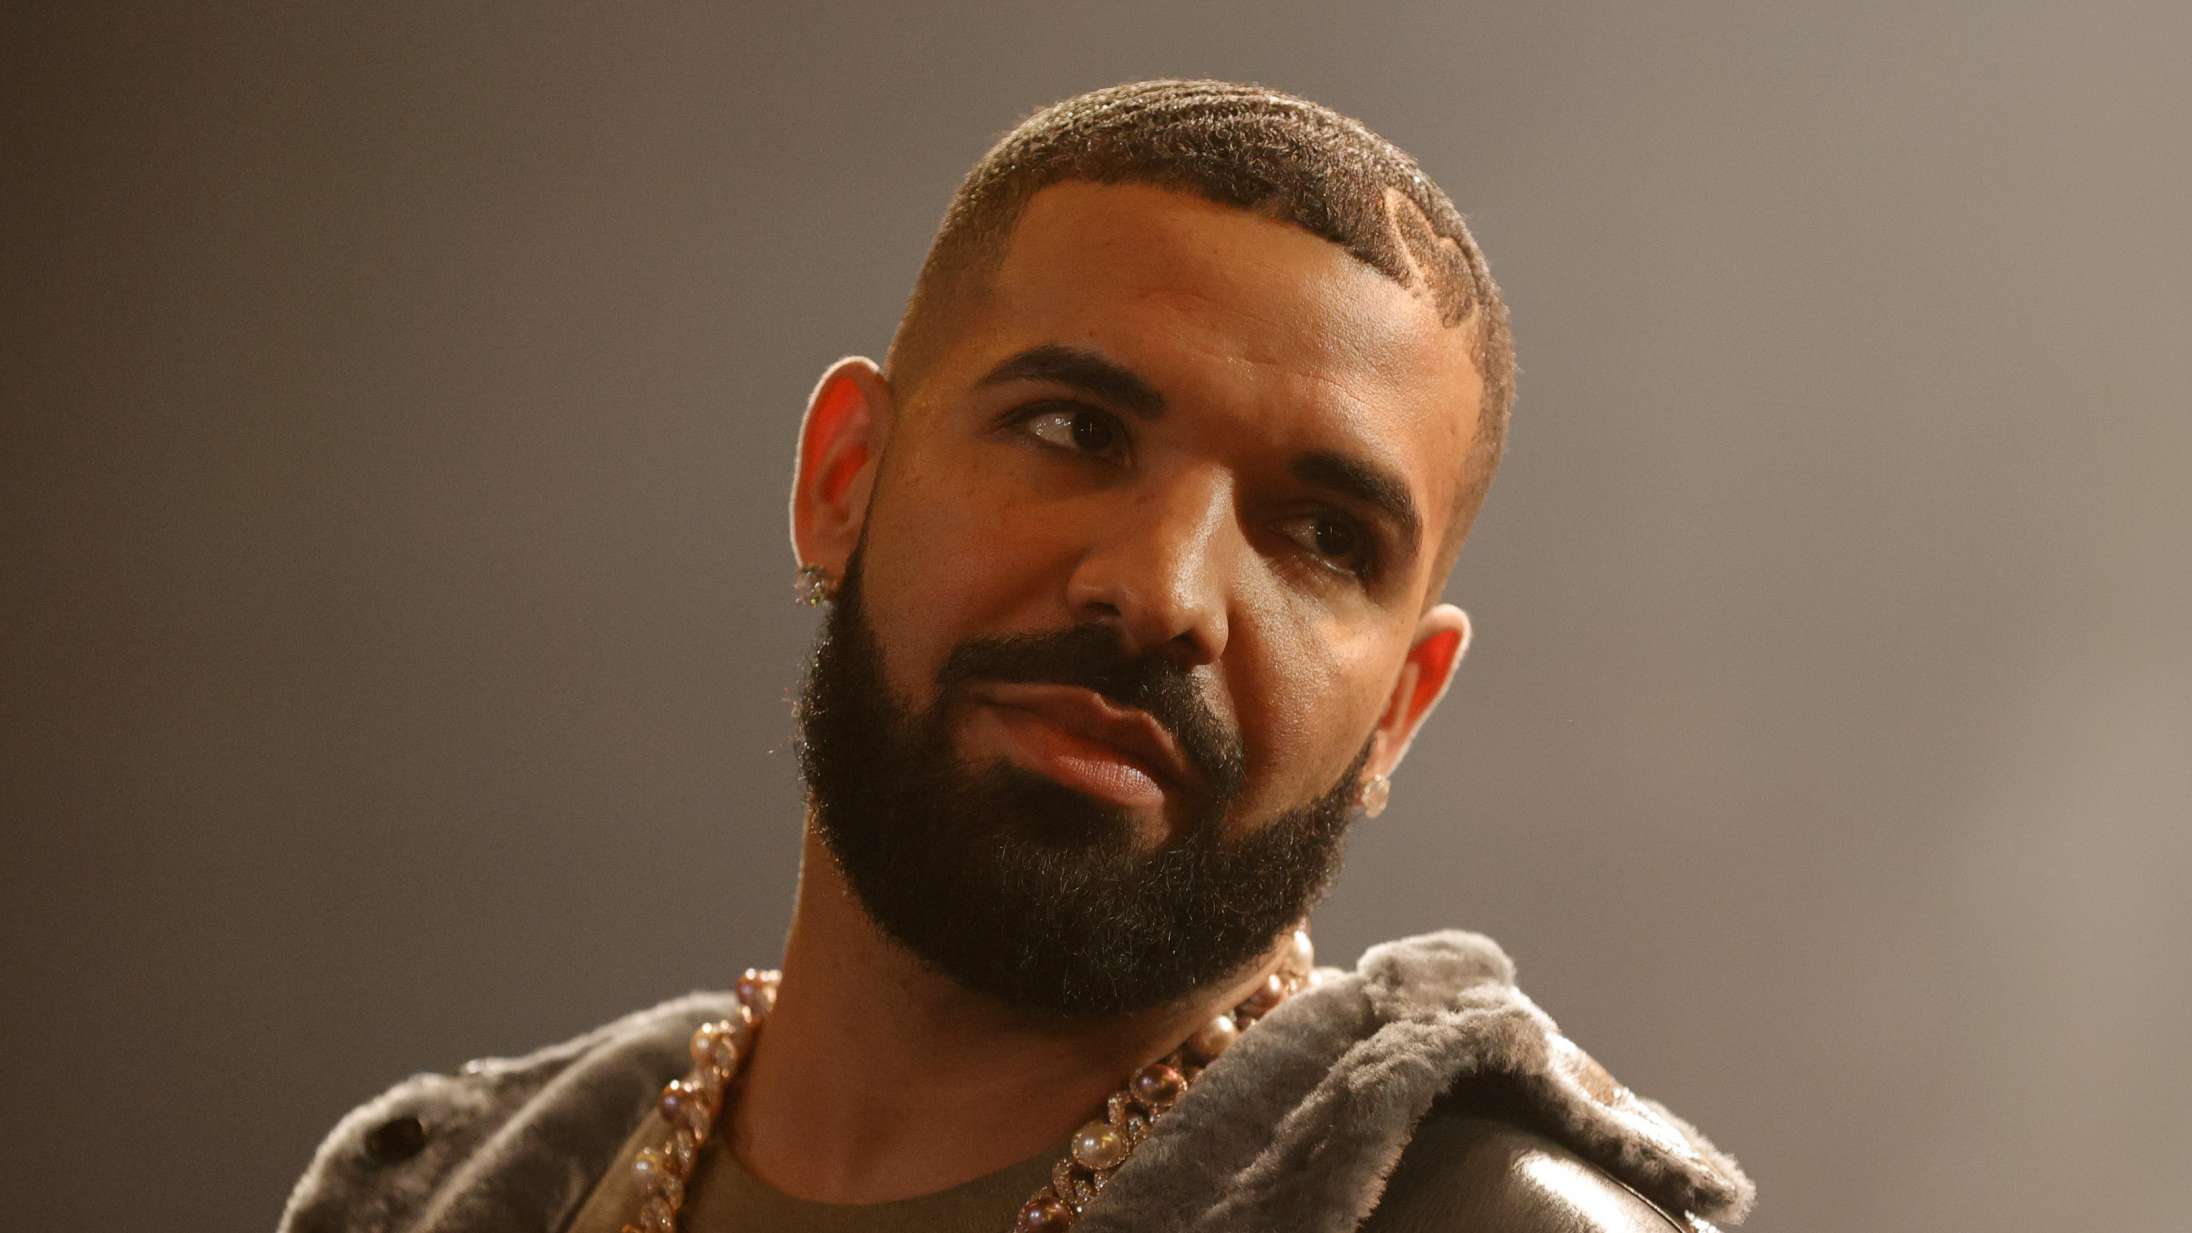 Drakes (mange) ekskærester slår sig sammen i ny ‘Saturday Night Live’-sketch